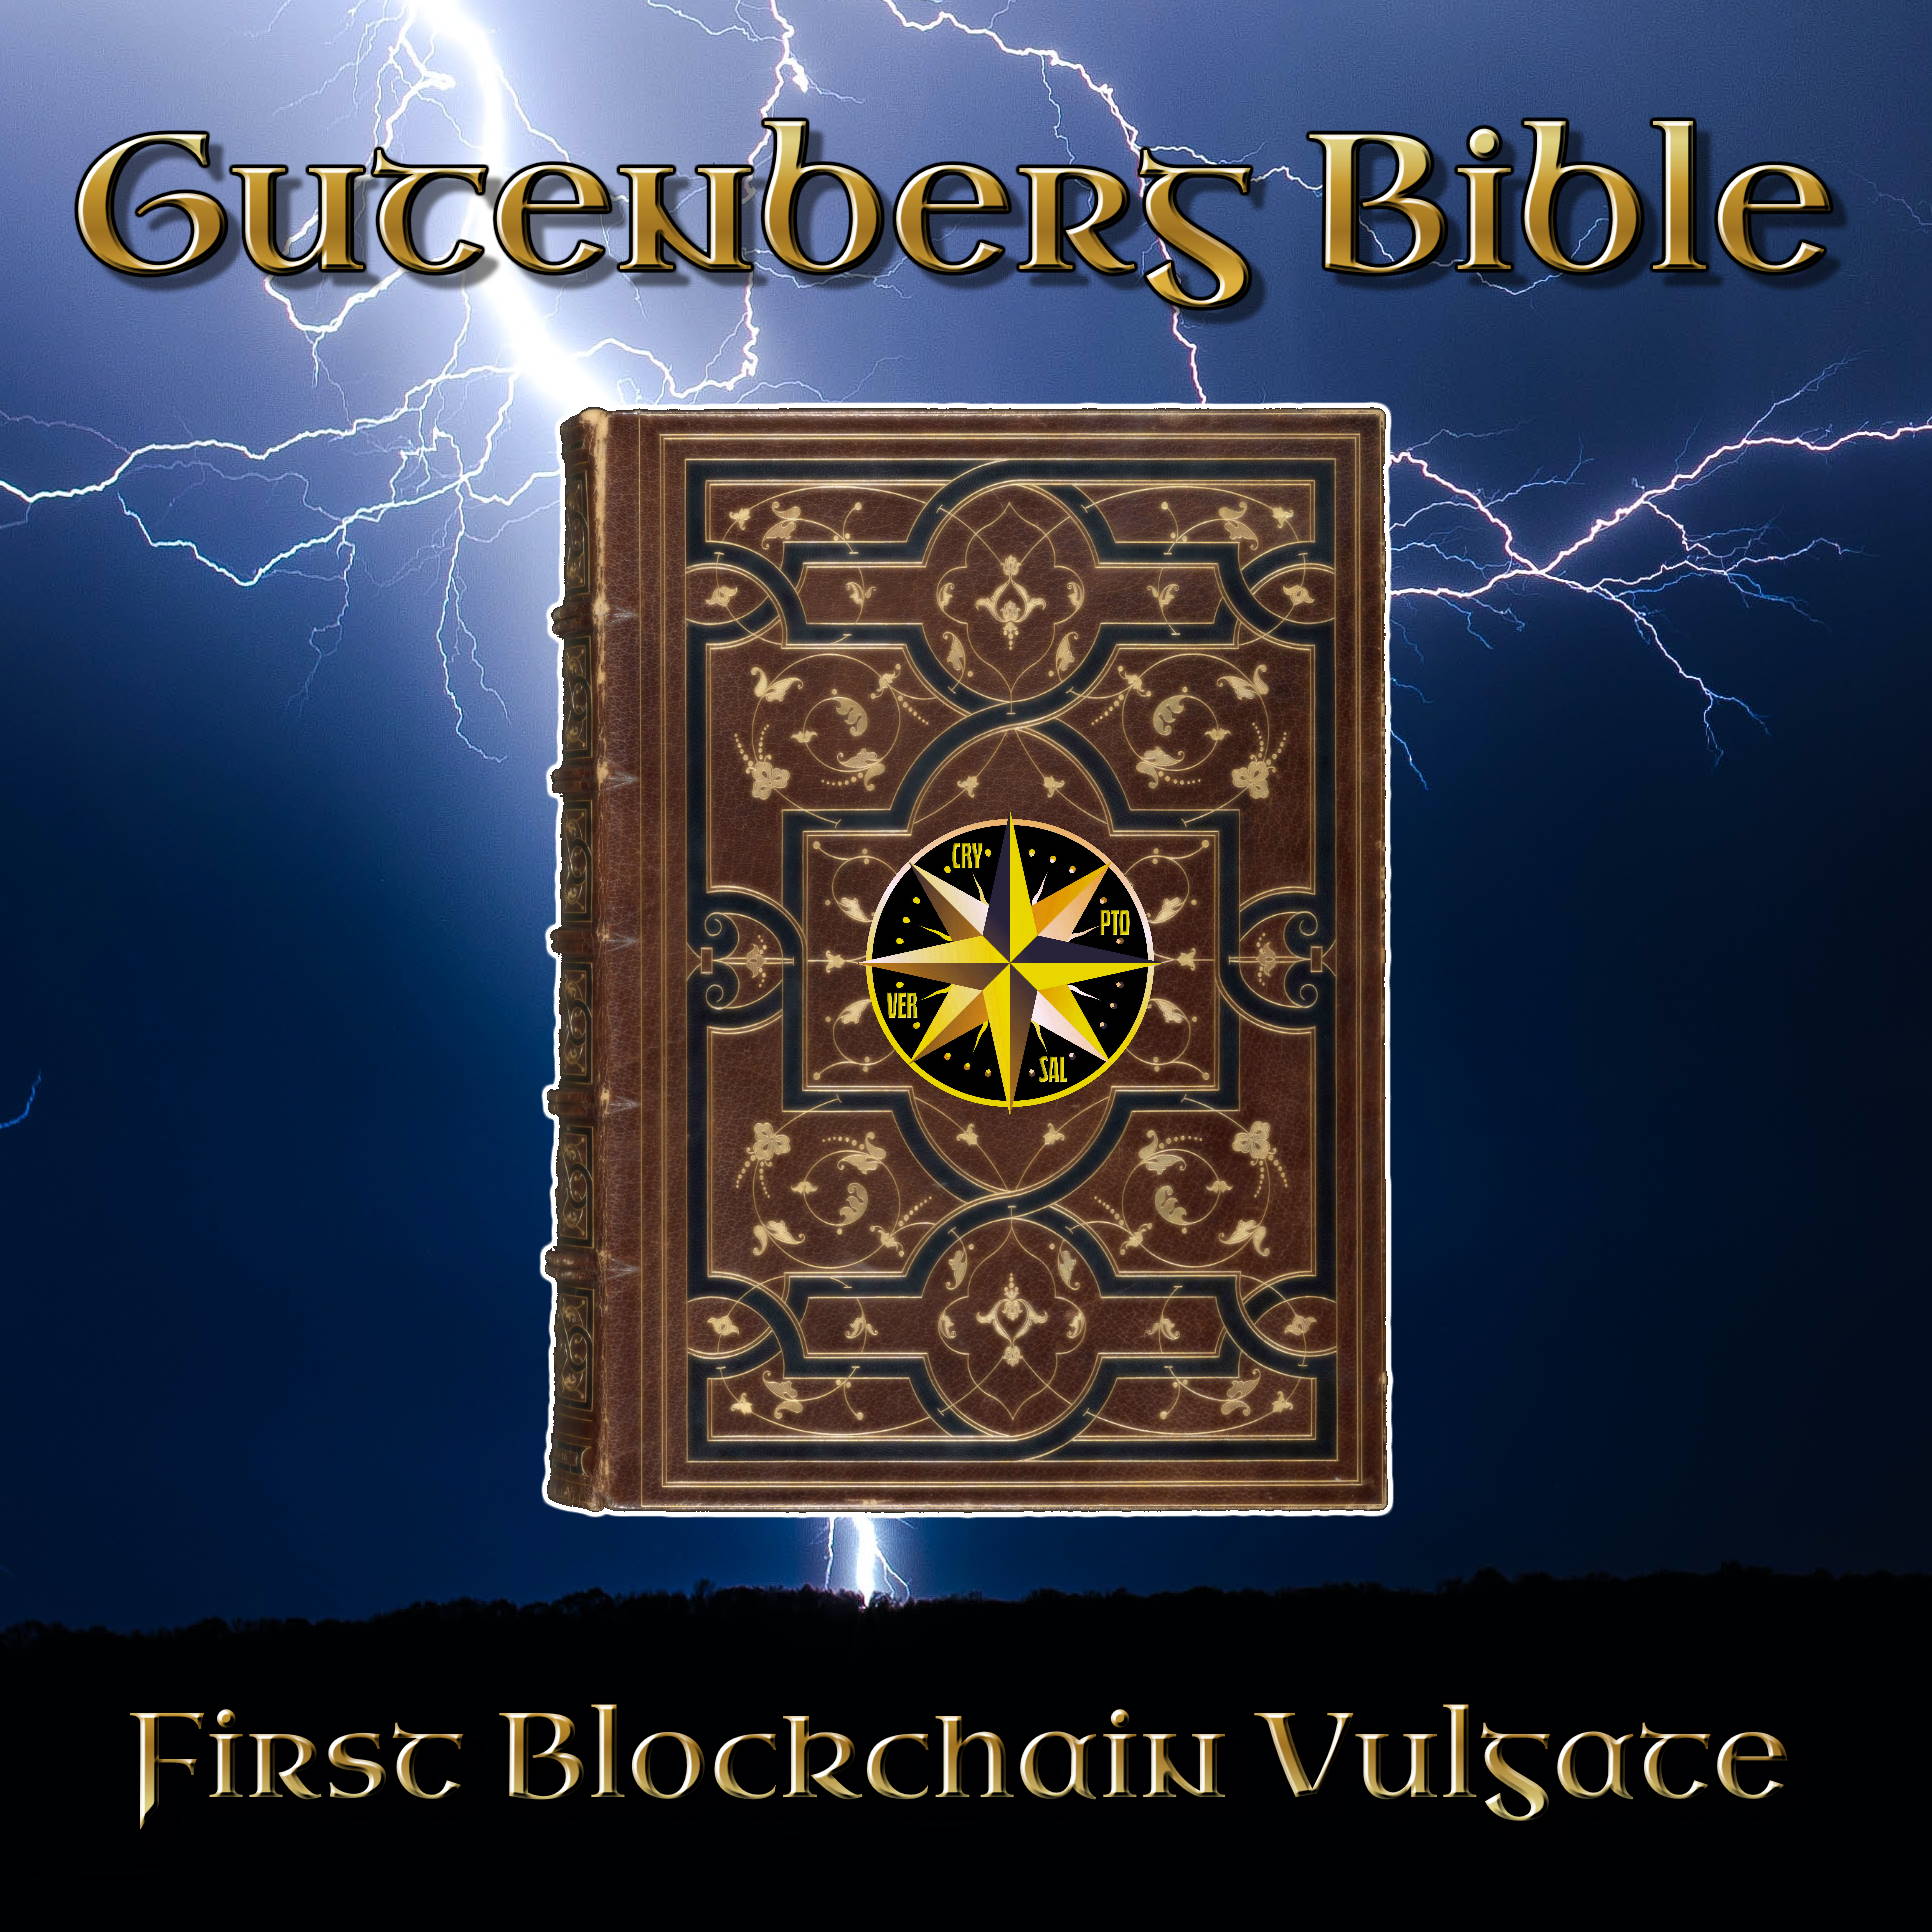 The Gutenberg Bible: First Blockchain Vulgate